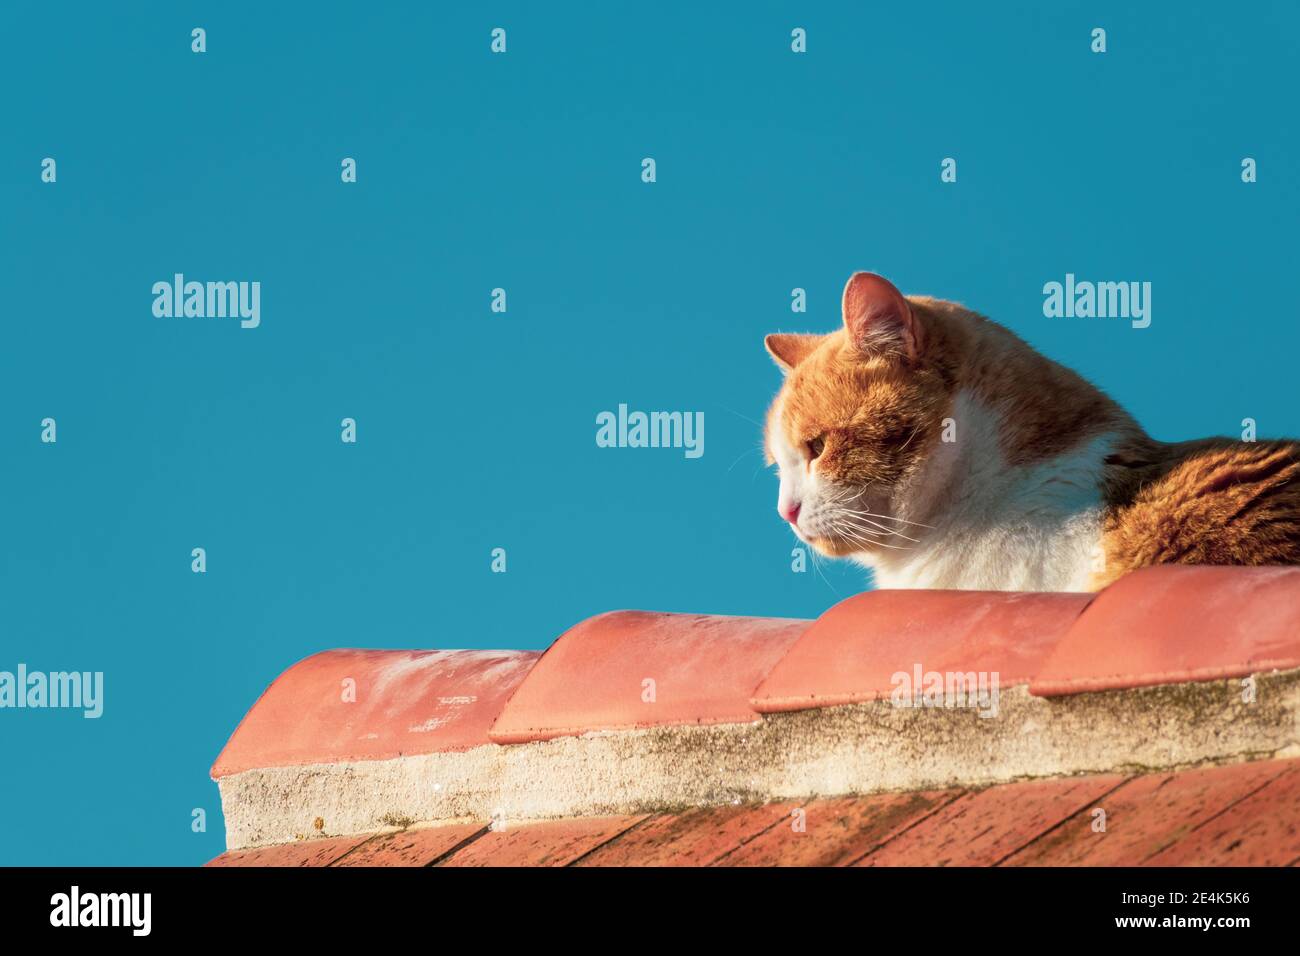 Détail d'un chat orange sur les carreaux d'un toit avec le ciel bleu profond en arrière-plan Banque D'Images